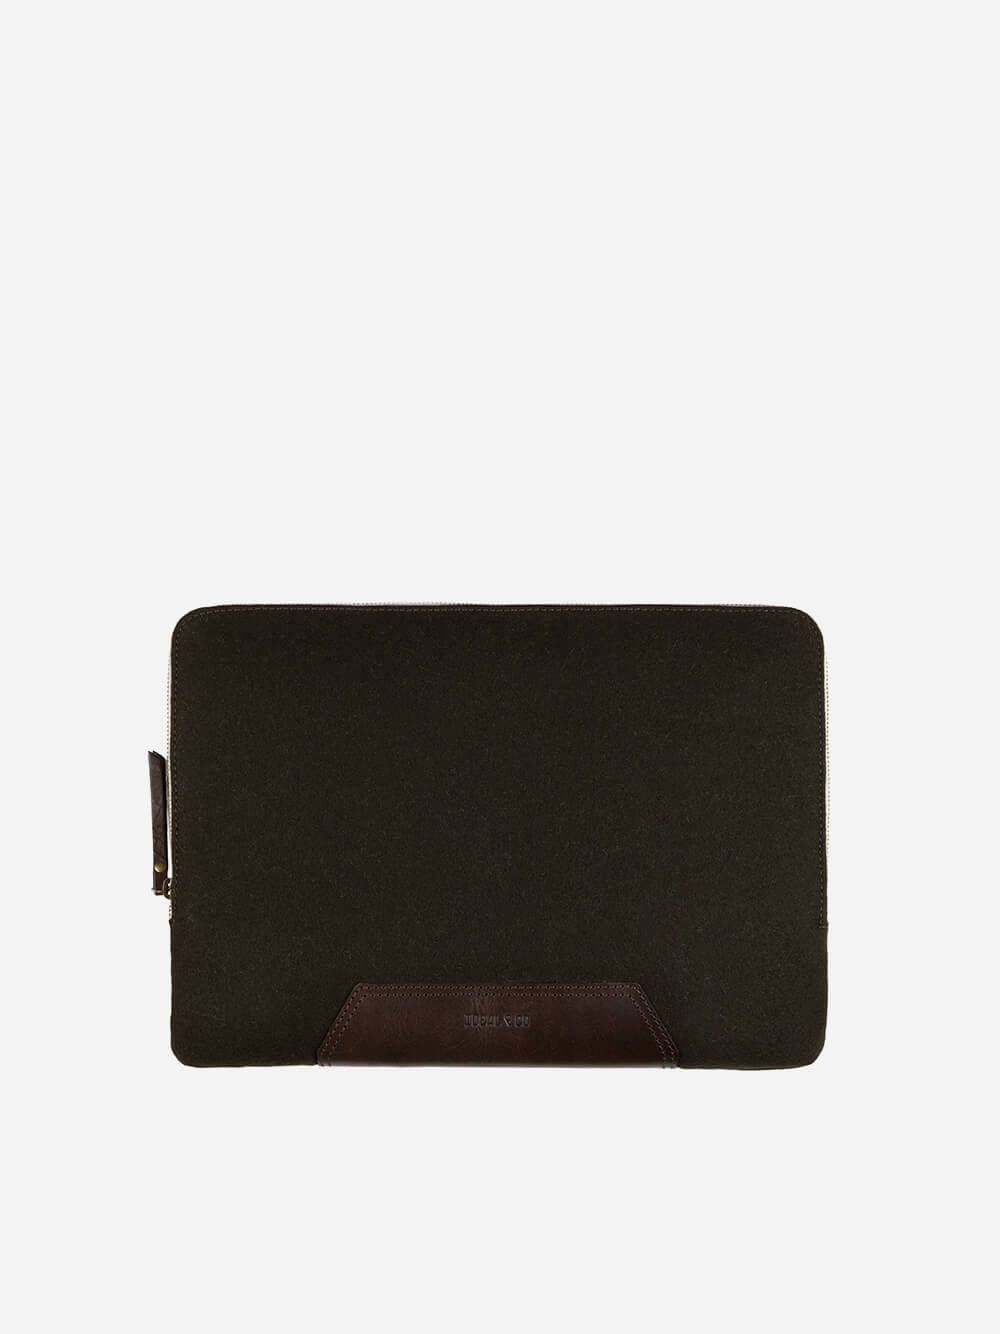 Dolinda Tablet-Laptop Sleeve I | Ideal & Co